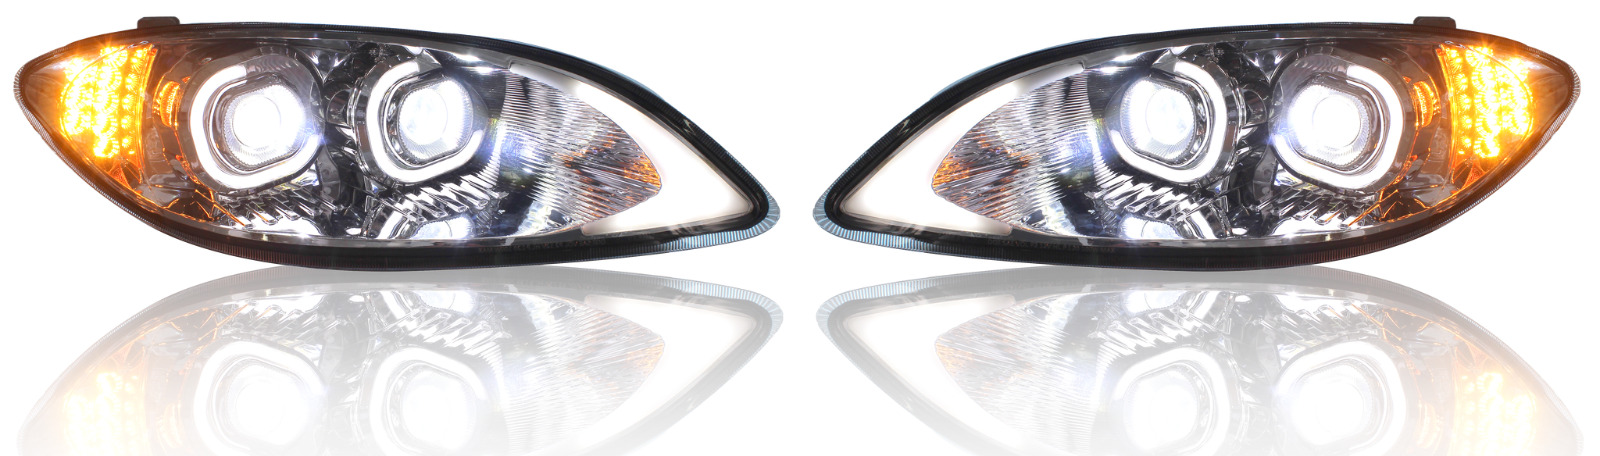 International Pro Star Full LED Headlights  DOT Approved Chrome Pair 